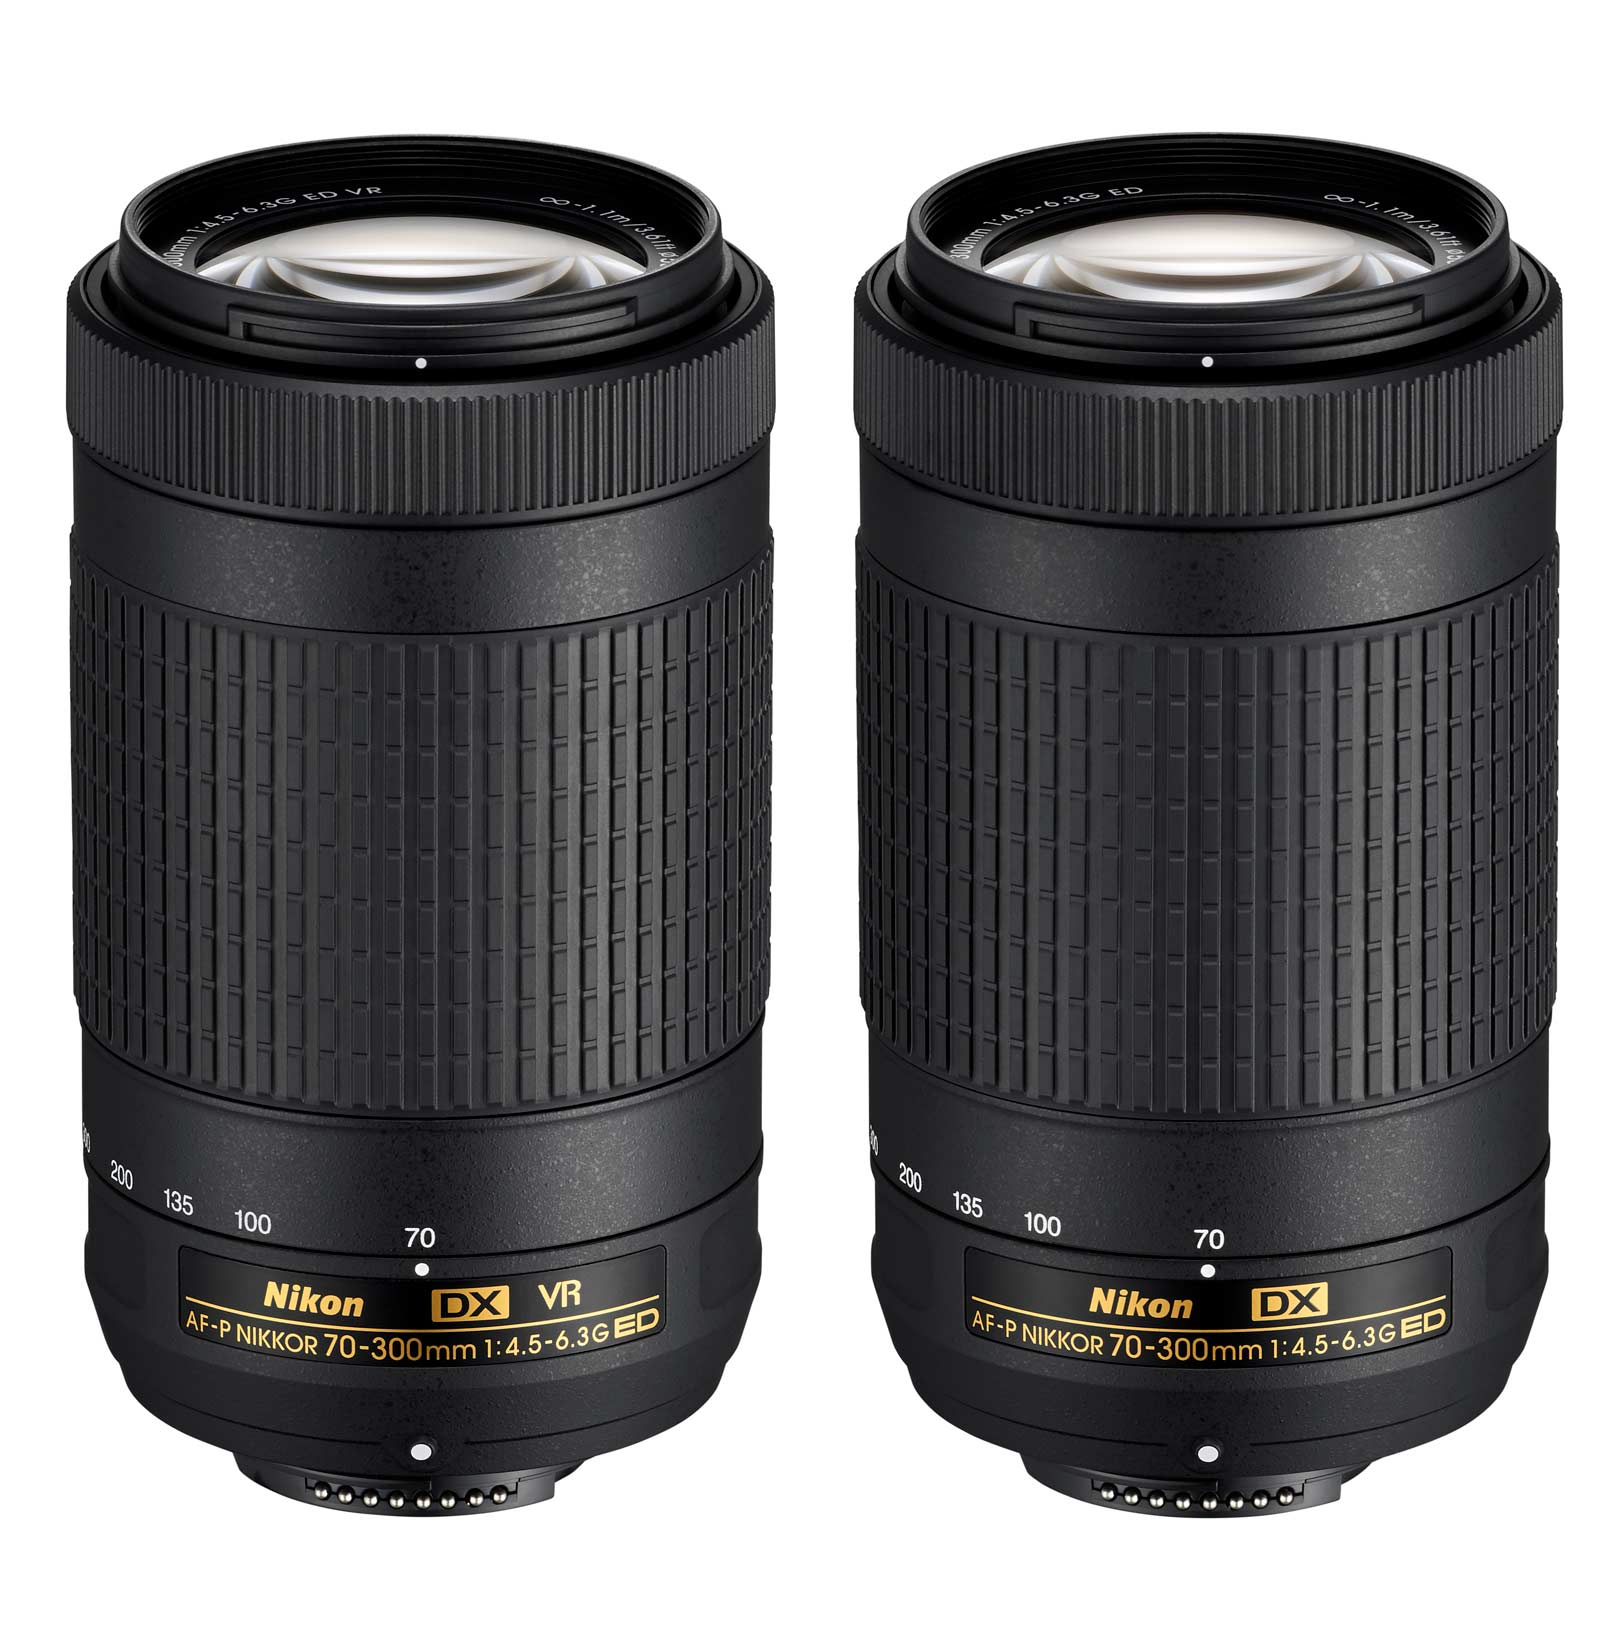 Af s nikkor 18 55mm. Nikon 18-55 3.5-5.6g. Объектив Nikon af-p DX Nikkor 70-300mm f/4.5-6.3g ed VR. Af Nikkor 18 70.